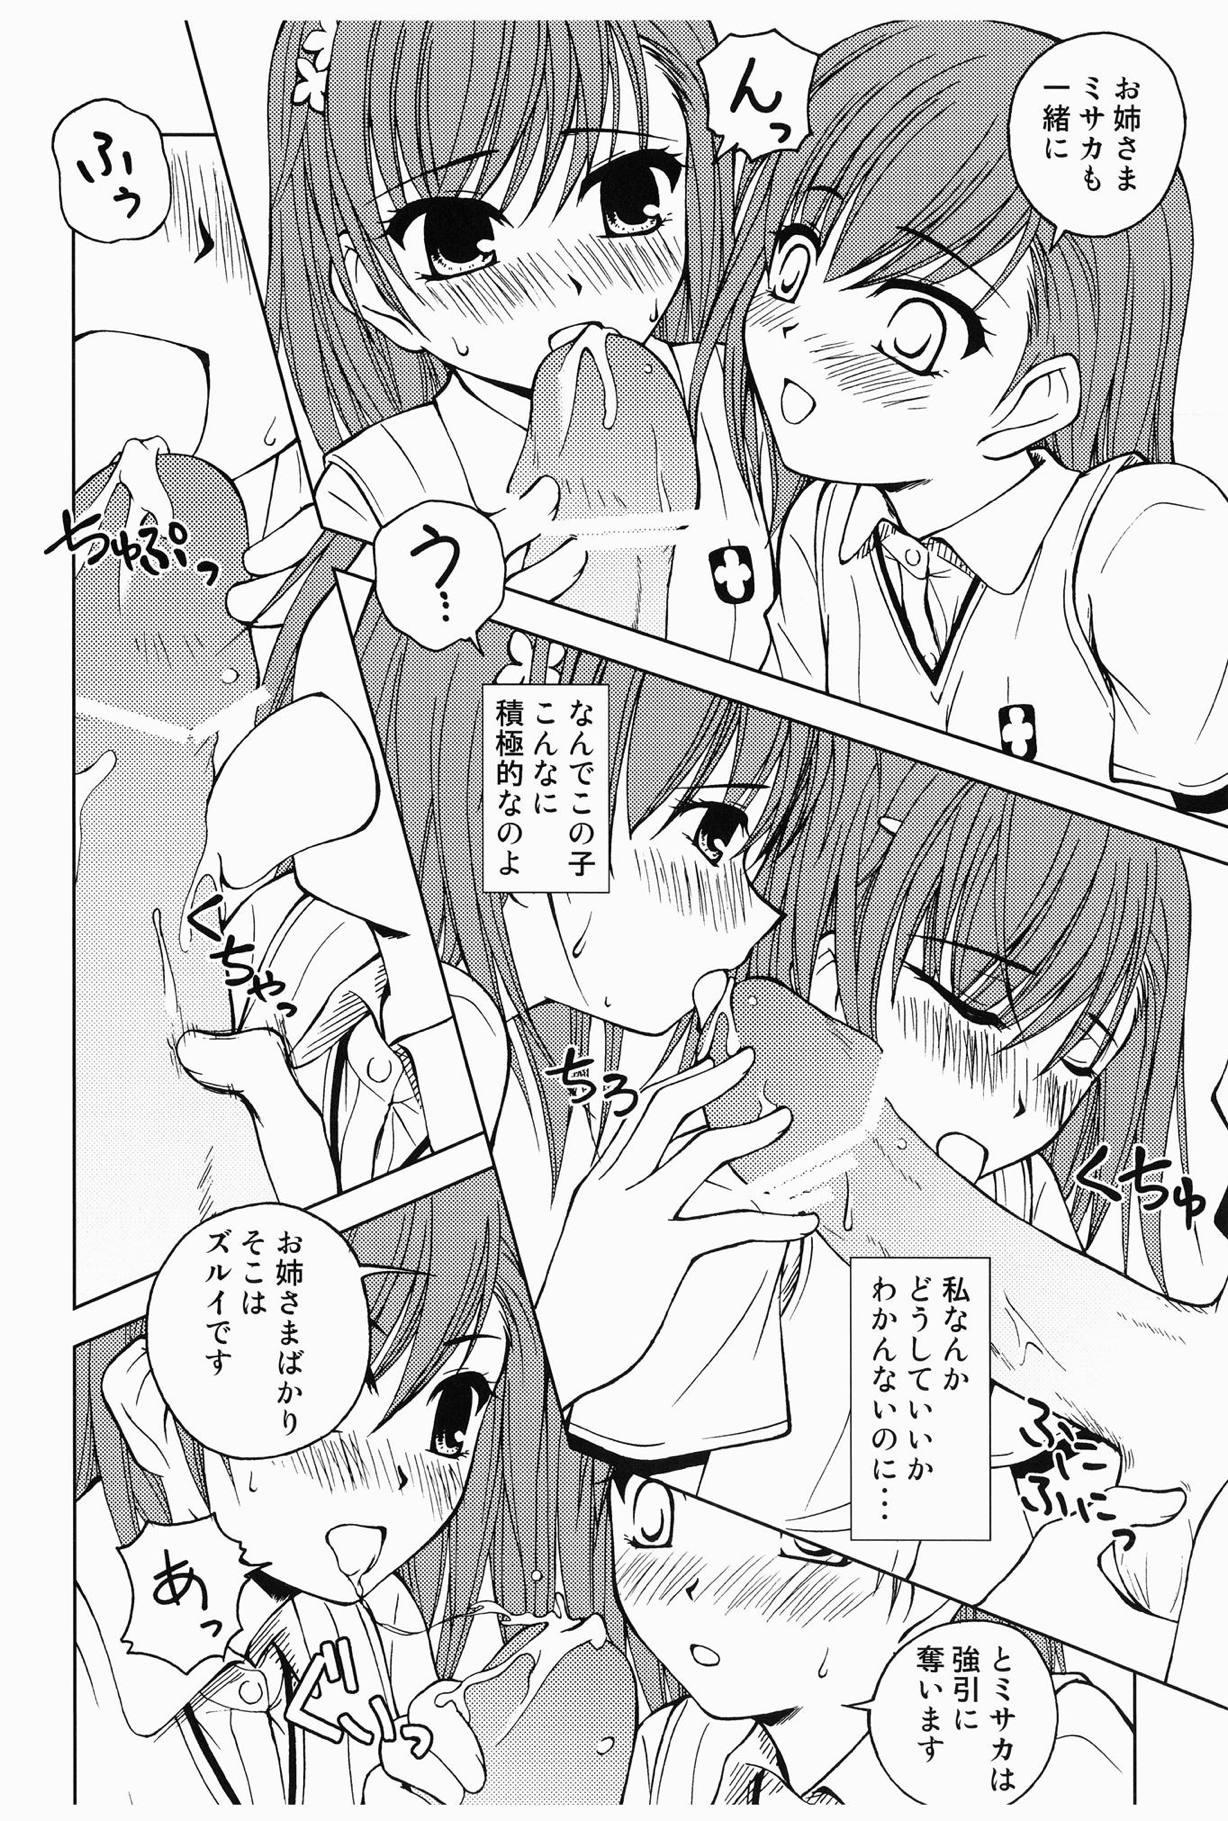 Straight Porn Touma to Misaka to Railgun - Toaru kagaku no railgun Inked - Page 7